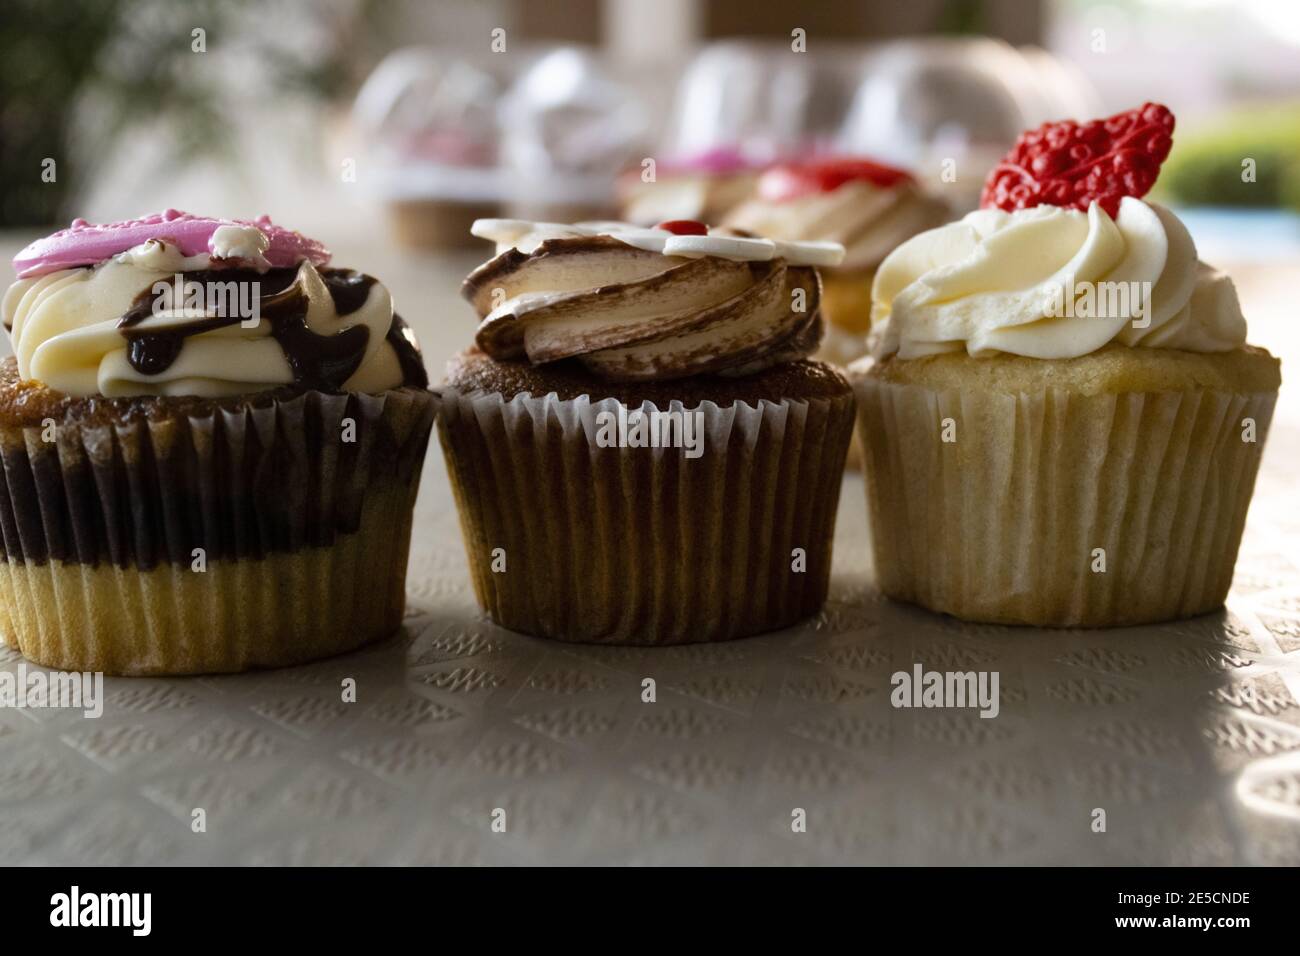 Primo piano di cupcake in marmo con salsa al cioccolato, cupcake al butterscotch con glassa e cupcake alla vaniglia con crema al burro, con fondati di dessert Foto Stock